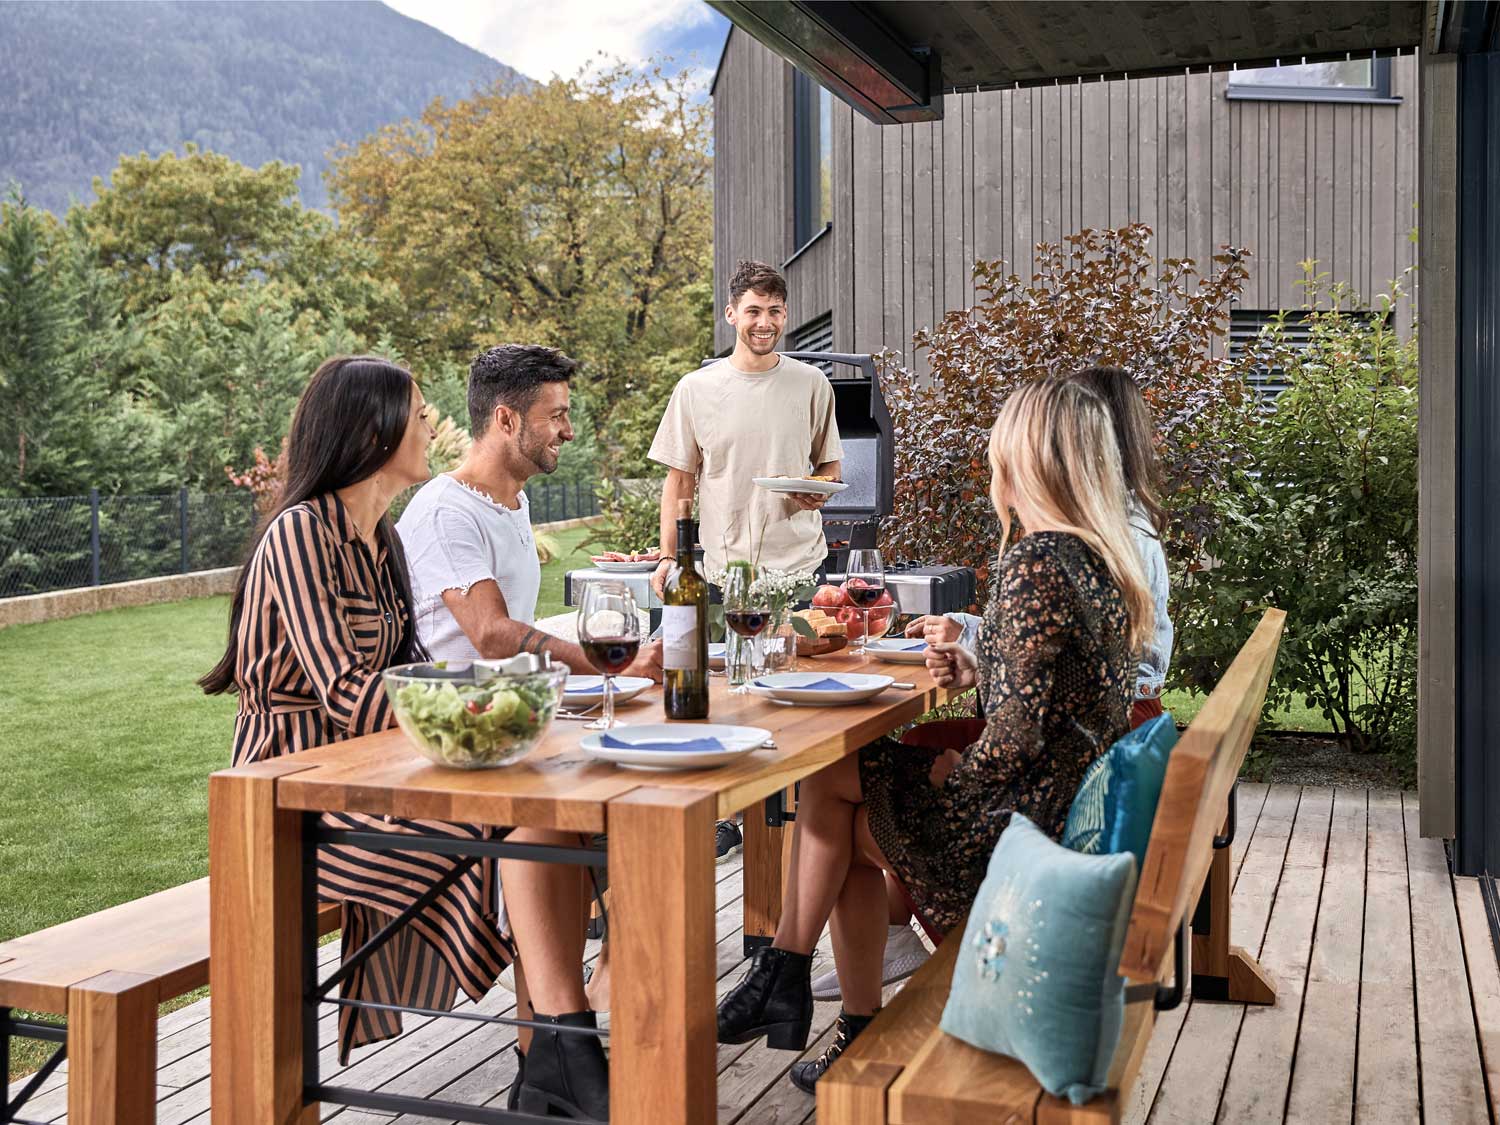 Sulla terrazza, cinque persone mangiano sul set di design Lago.